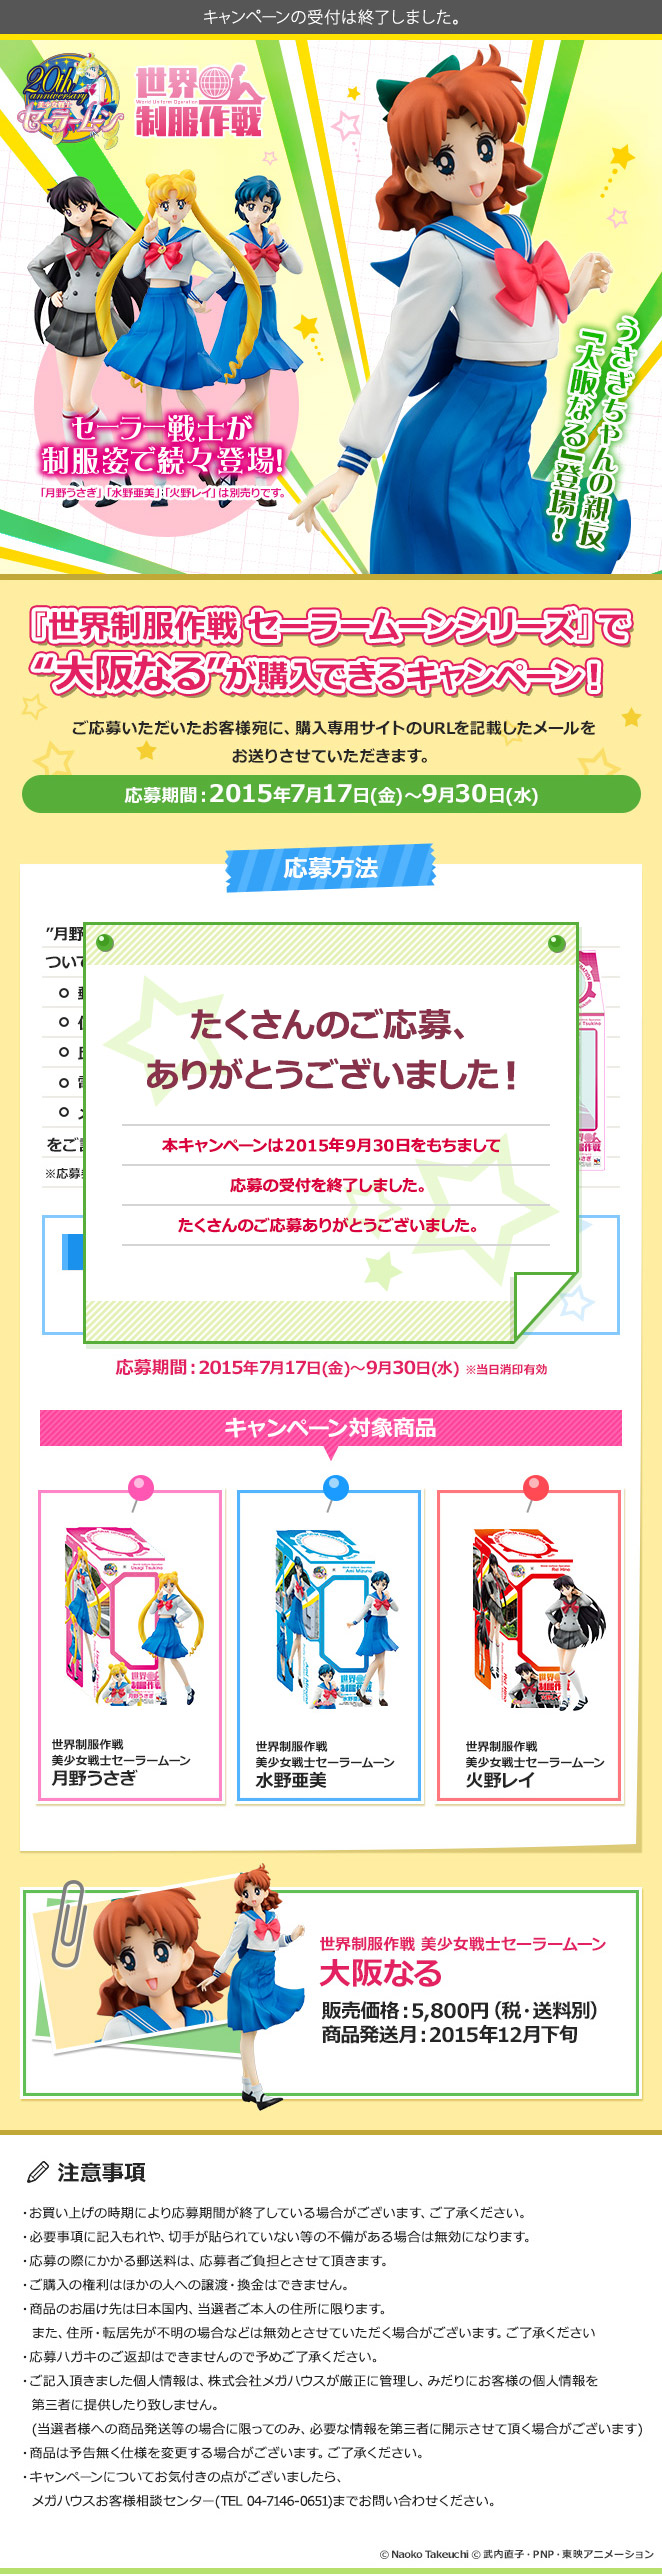 『世界制服作戦 セーラームーンシリーズ』で “大阪なる”が購入できるキャンペーン 応募期間：2015年7月17日（金）〜9月30日（水）まで！